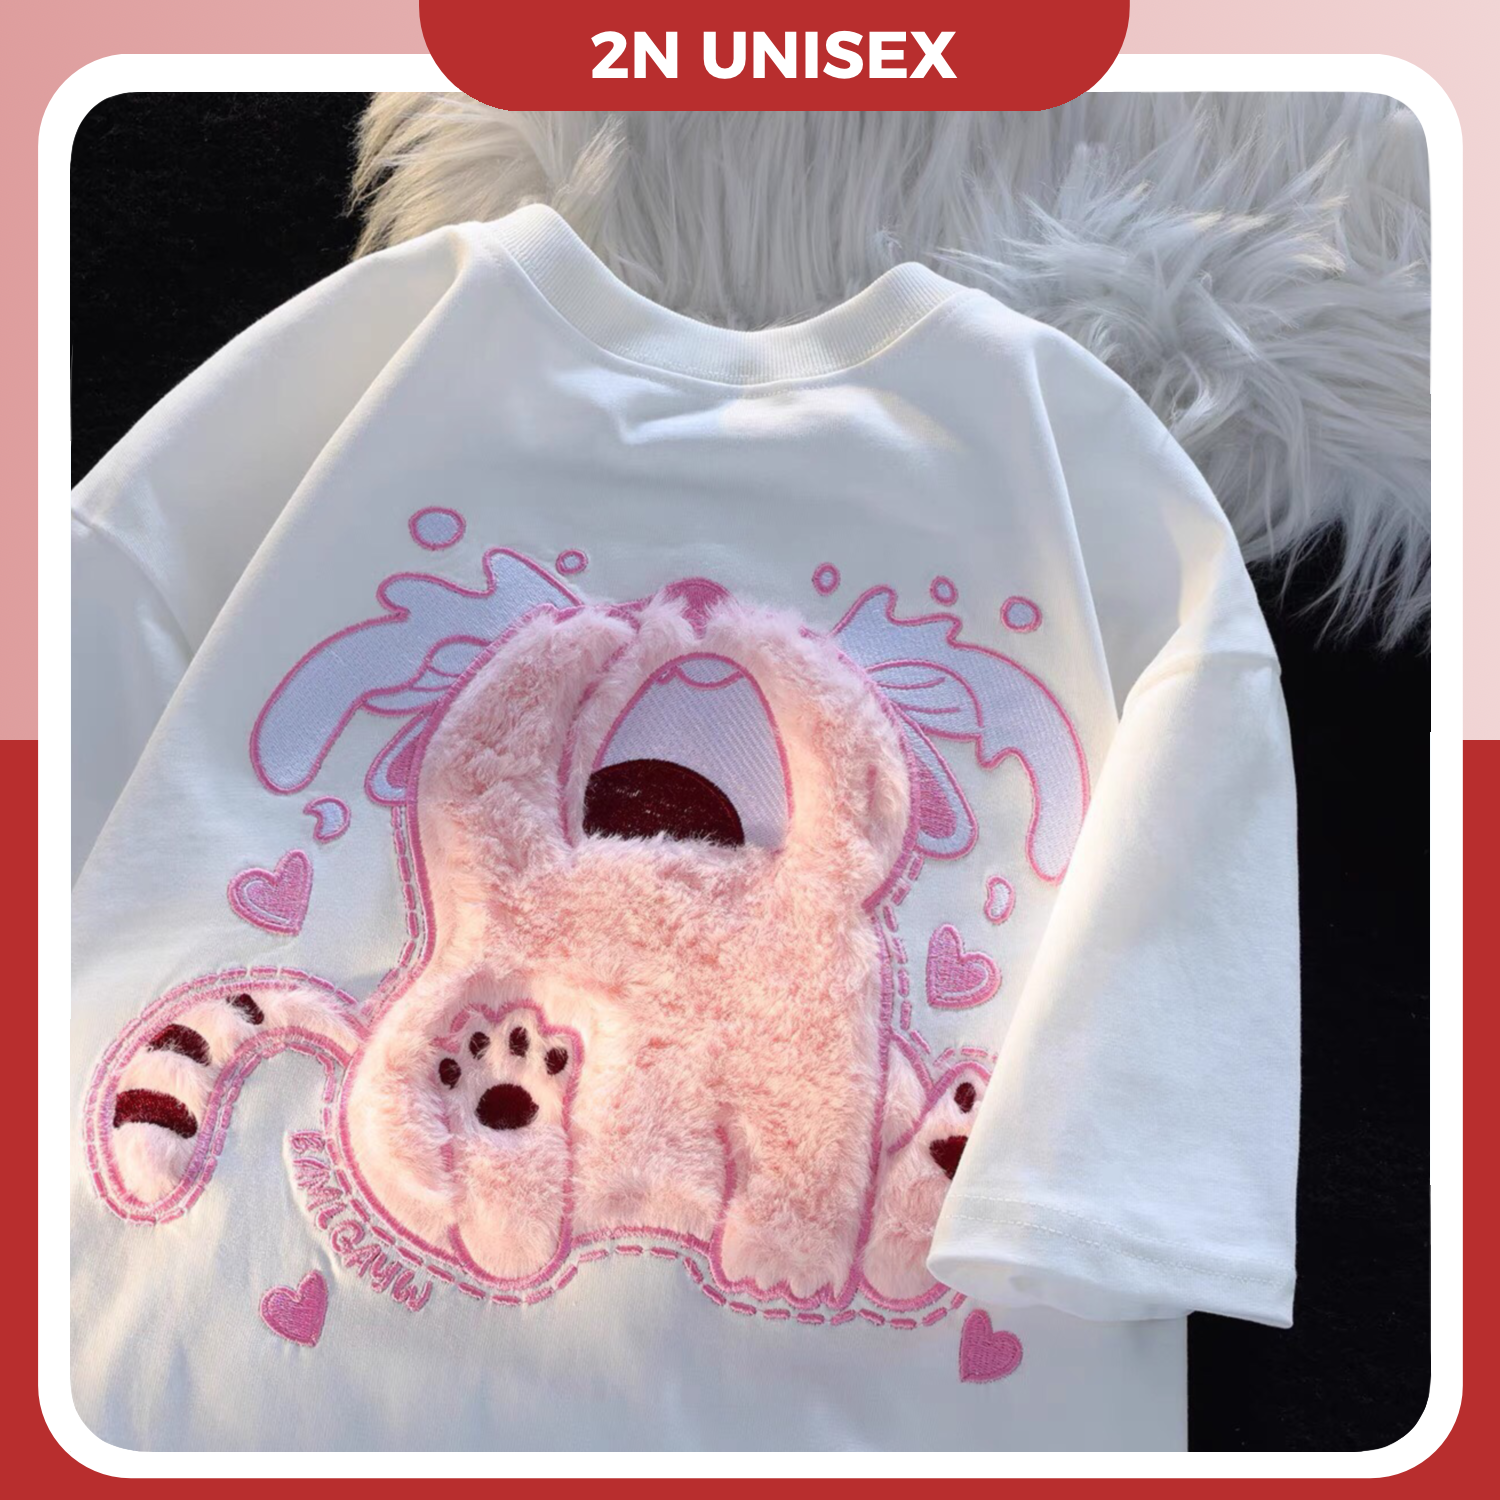 Áo phông nam nữ form rộng 2N Unisex thun cotton in hình mèo hồng thêu lông màu trắng/đen